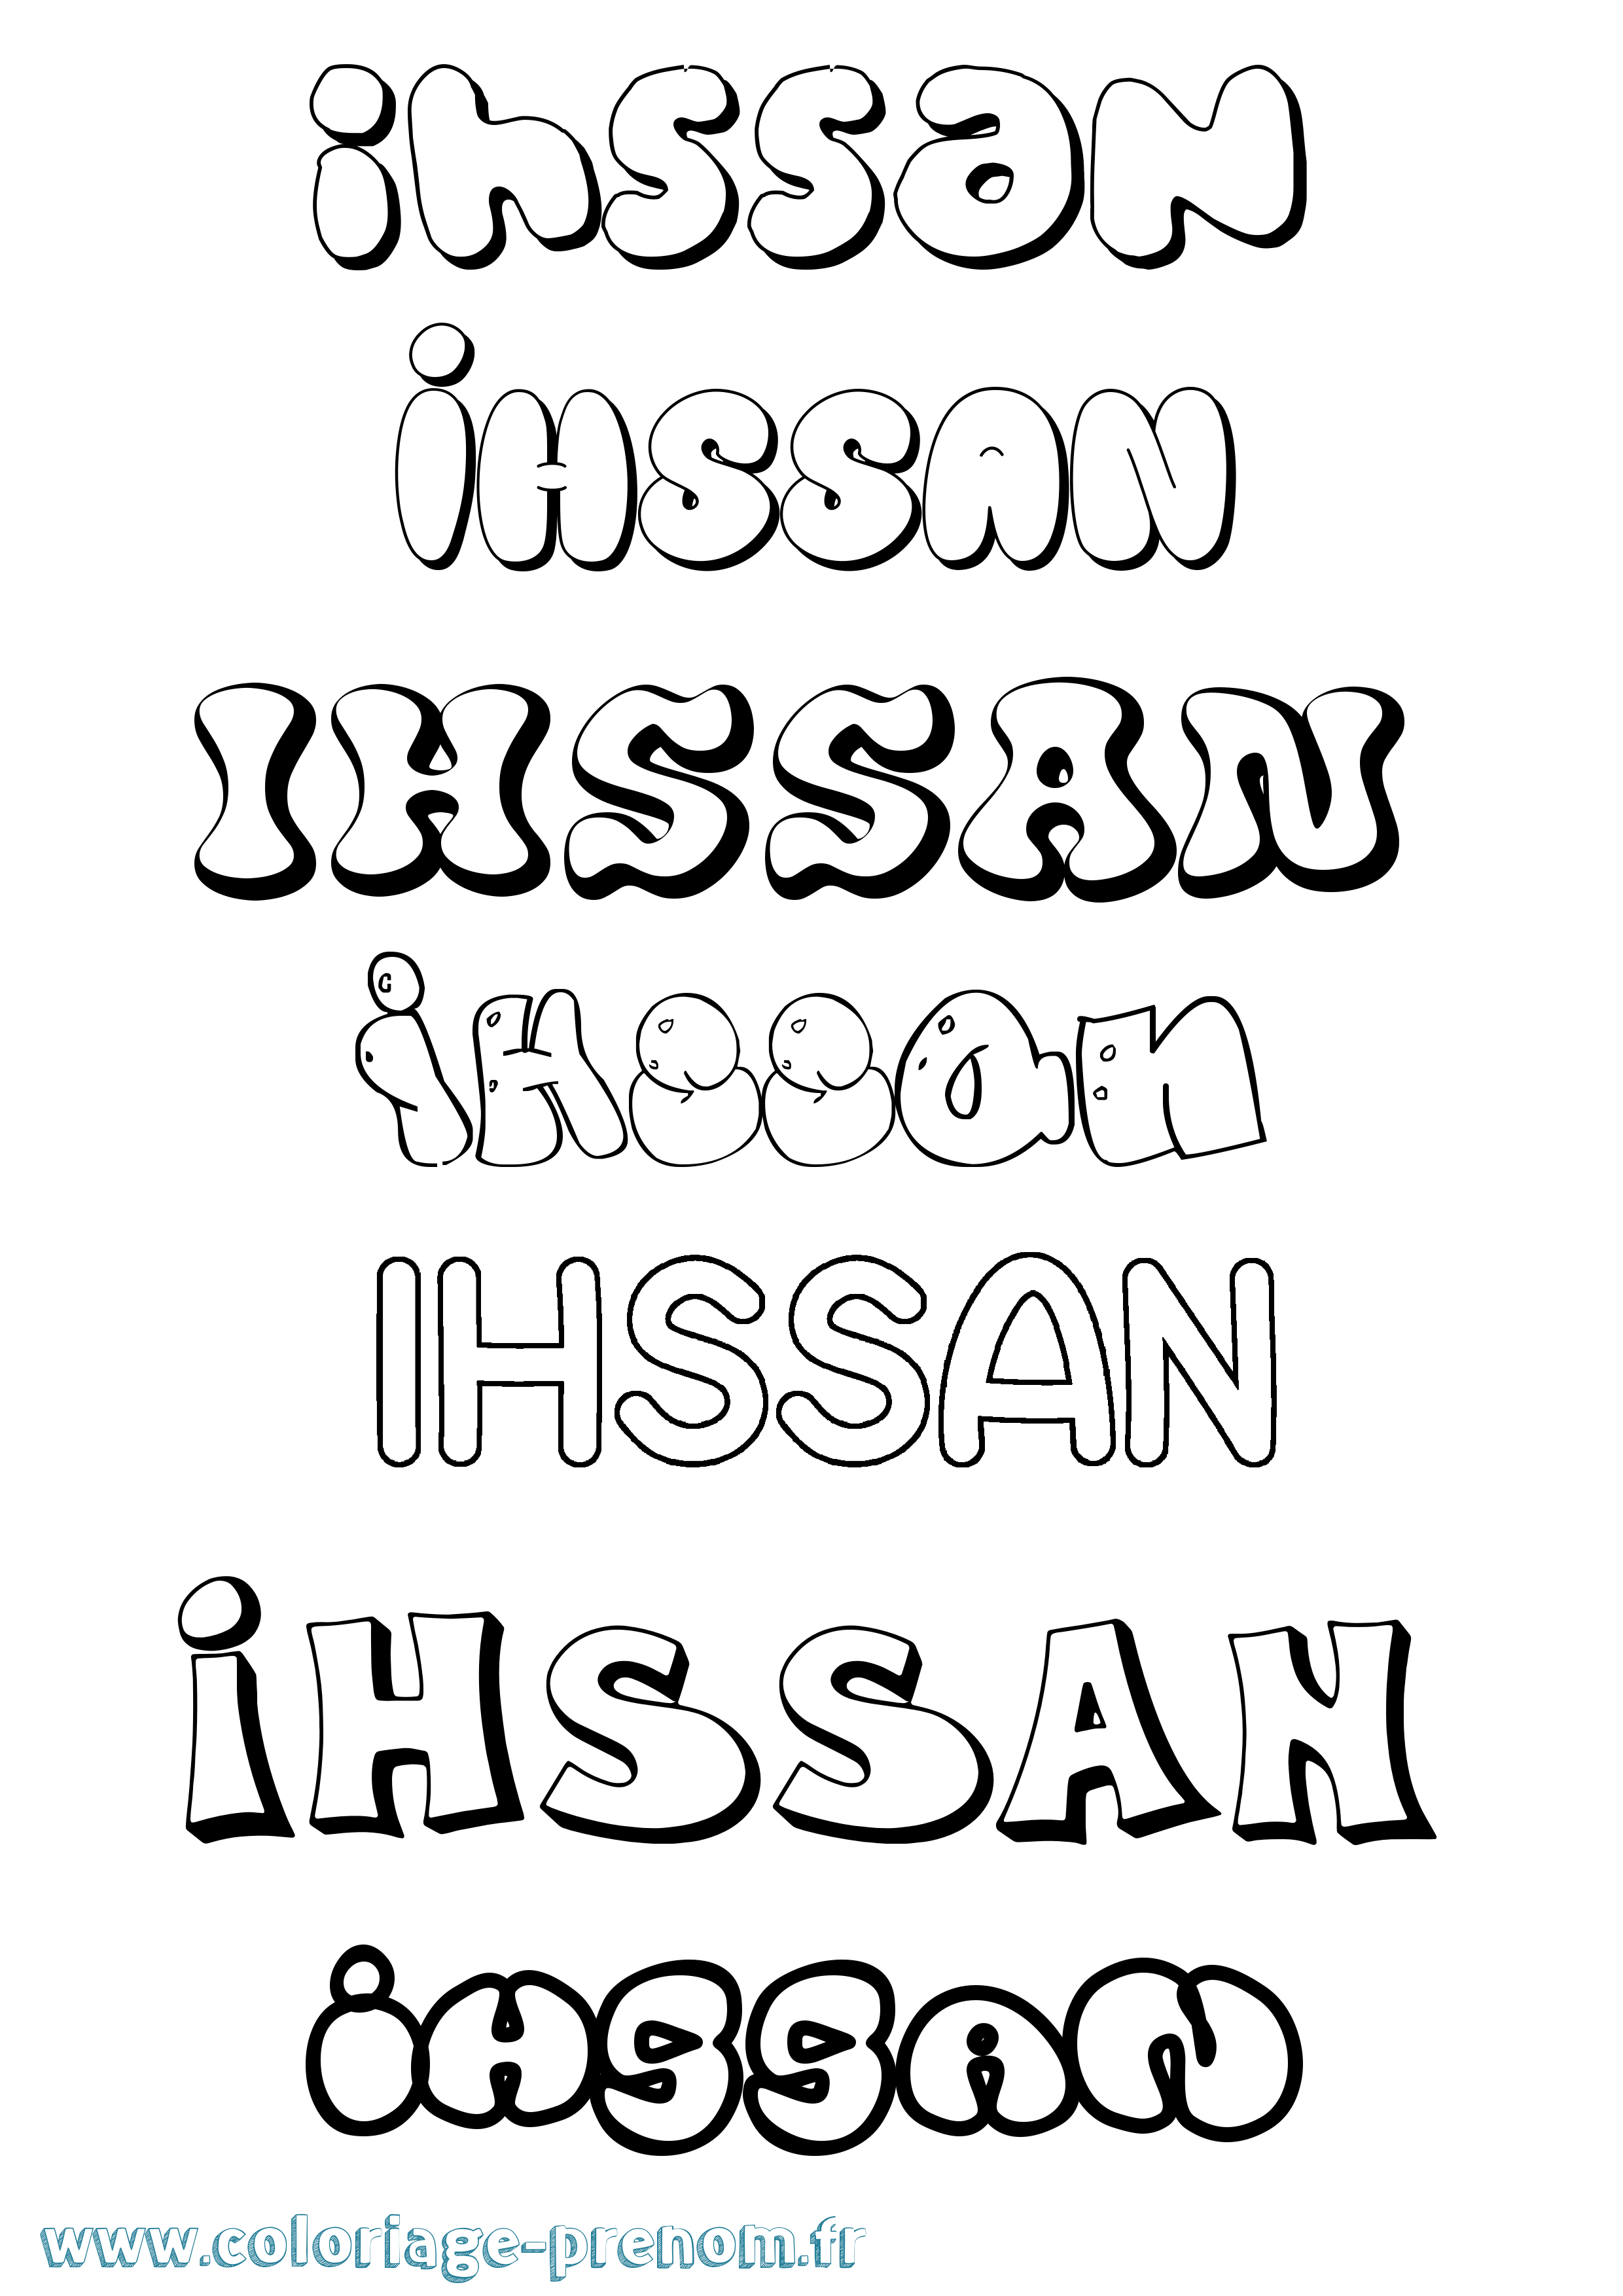 Coloriage prénom Ihssan Bubble